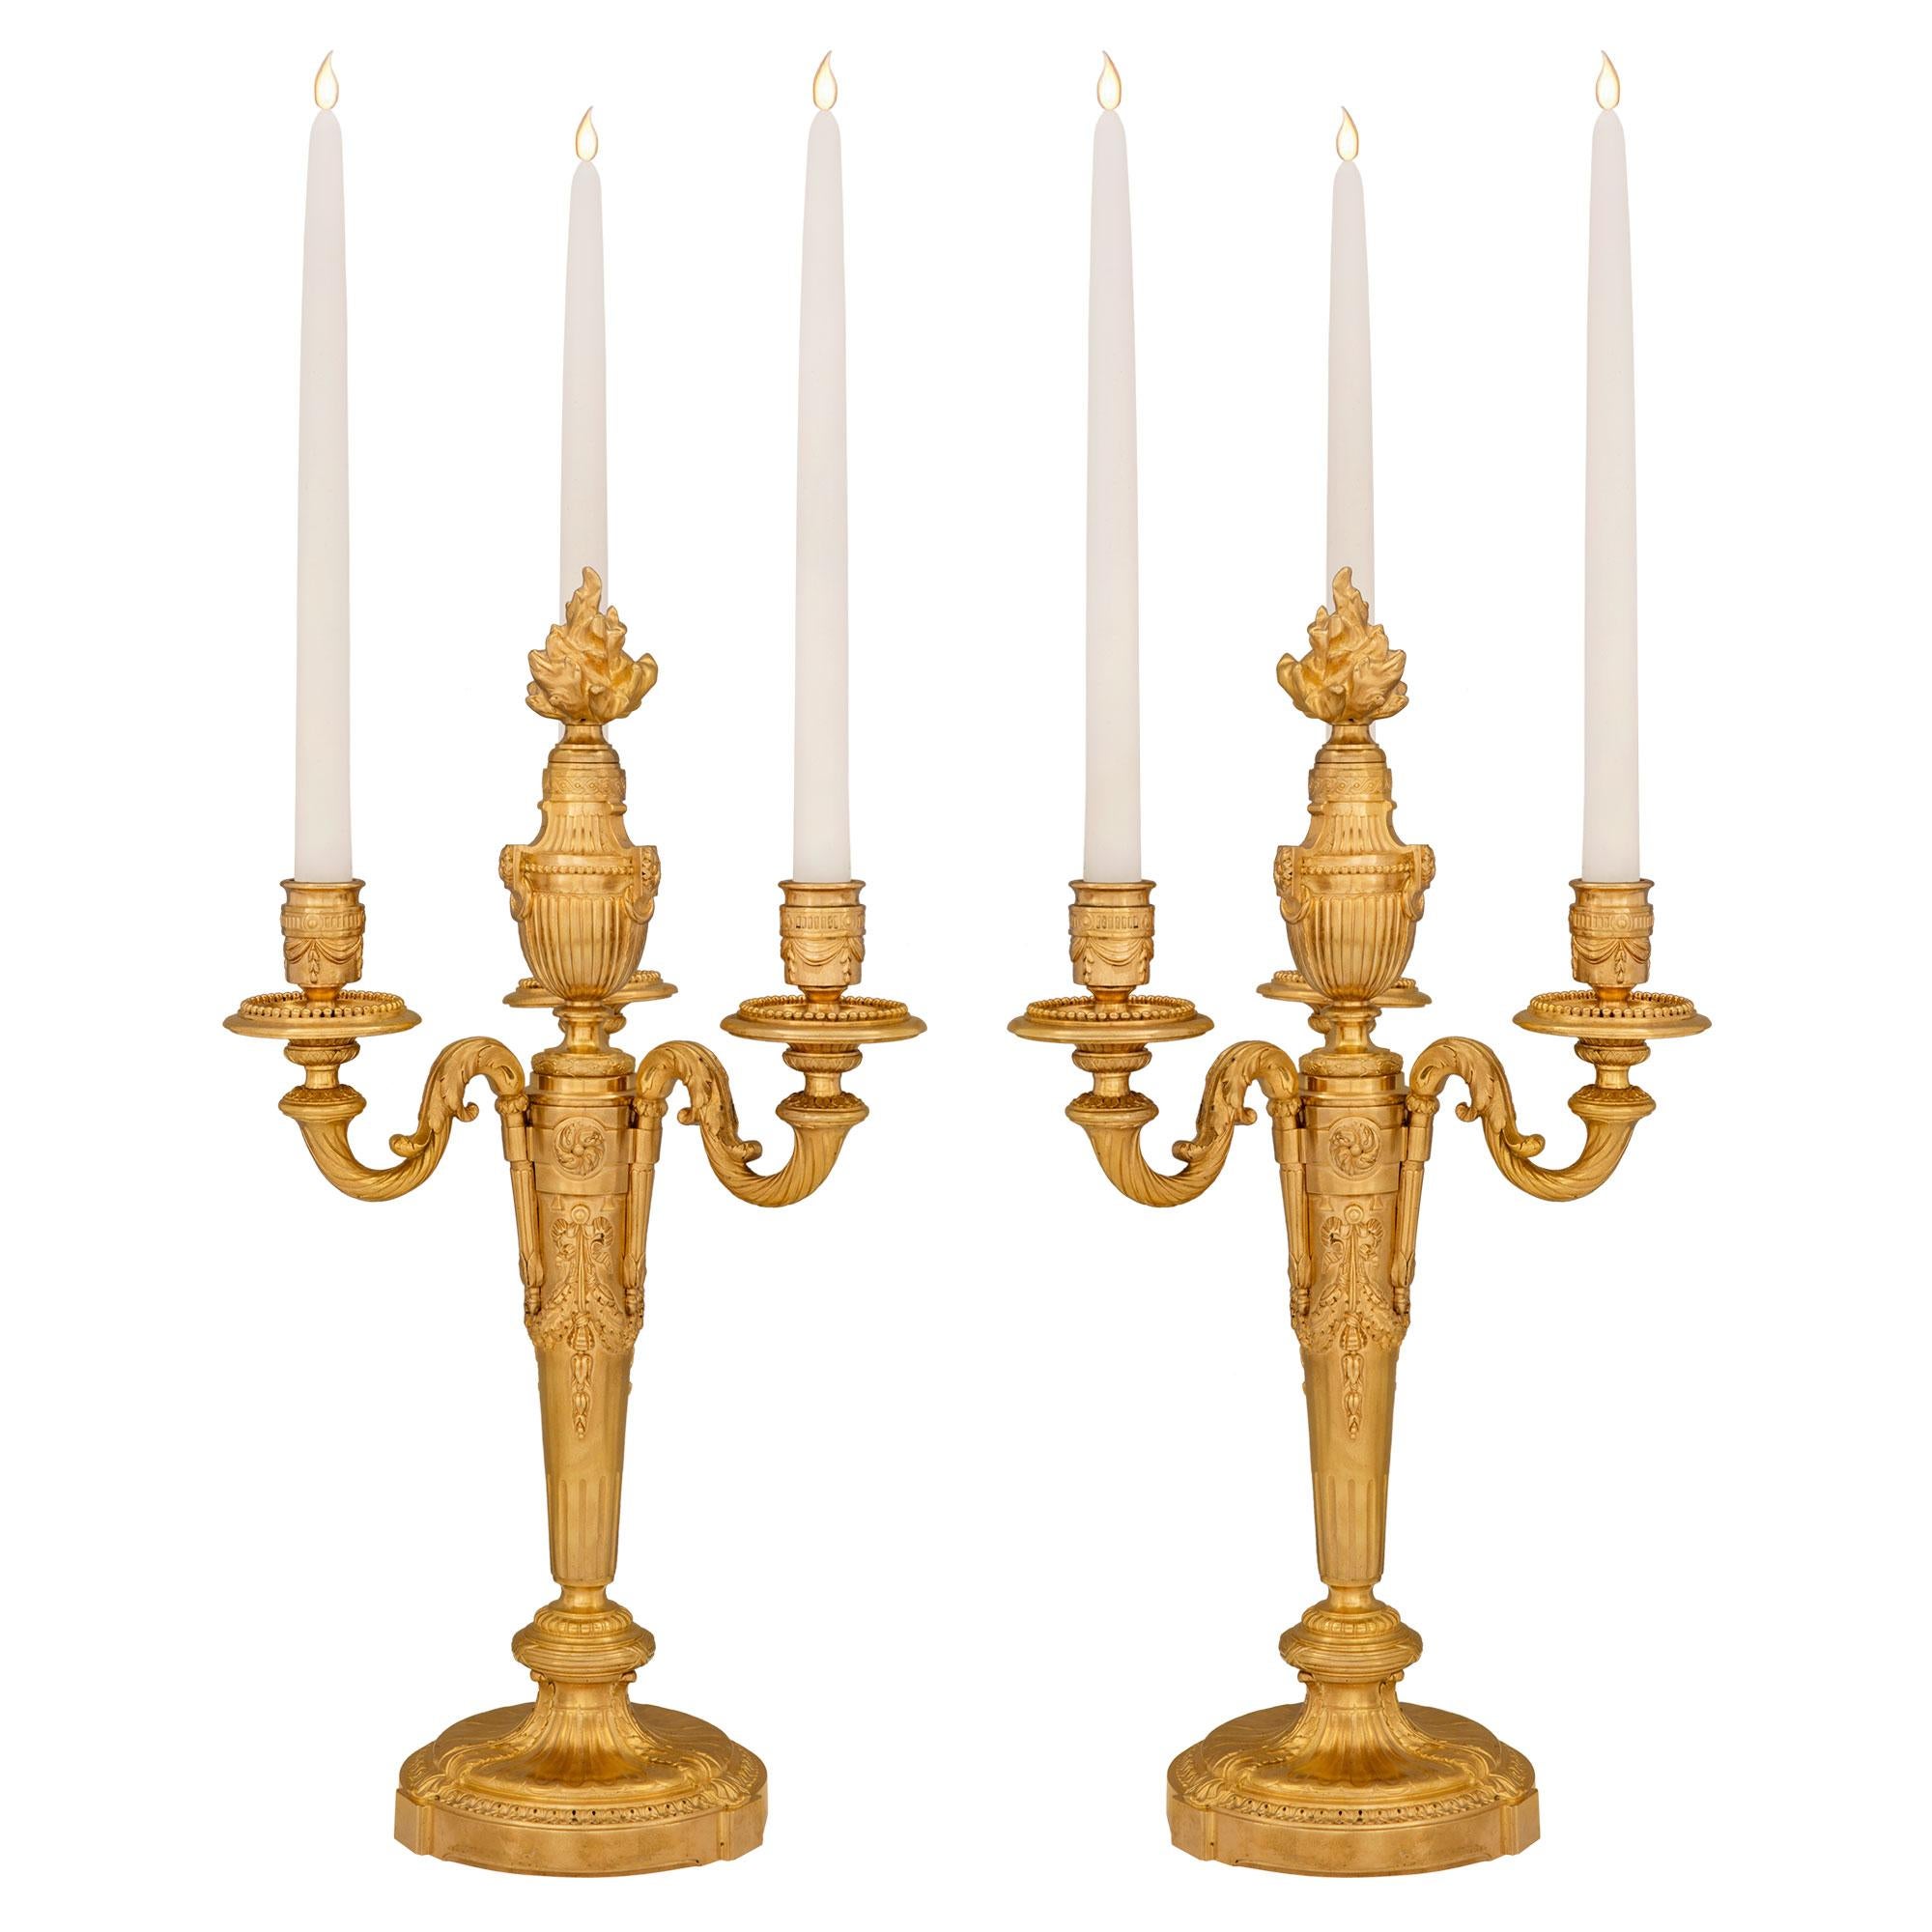 Une paire très élégante de candélabres en bronze doré de style Louis XVI du 19ème siècle. Chaque candélabre à trois bras est surélevé par une fine base circulaire avec une bande enveloppante détaillée Coeur de Rai et des feuilles d'acanthe. Les